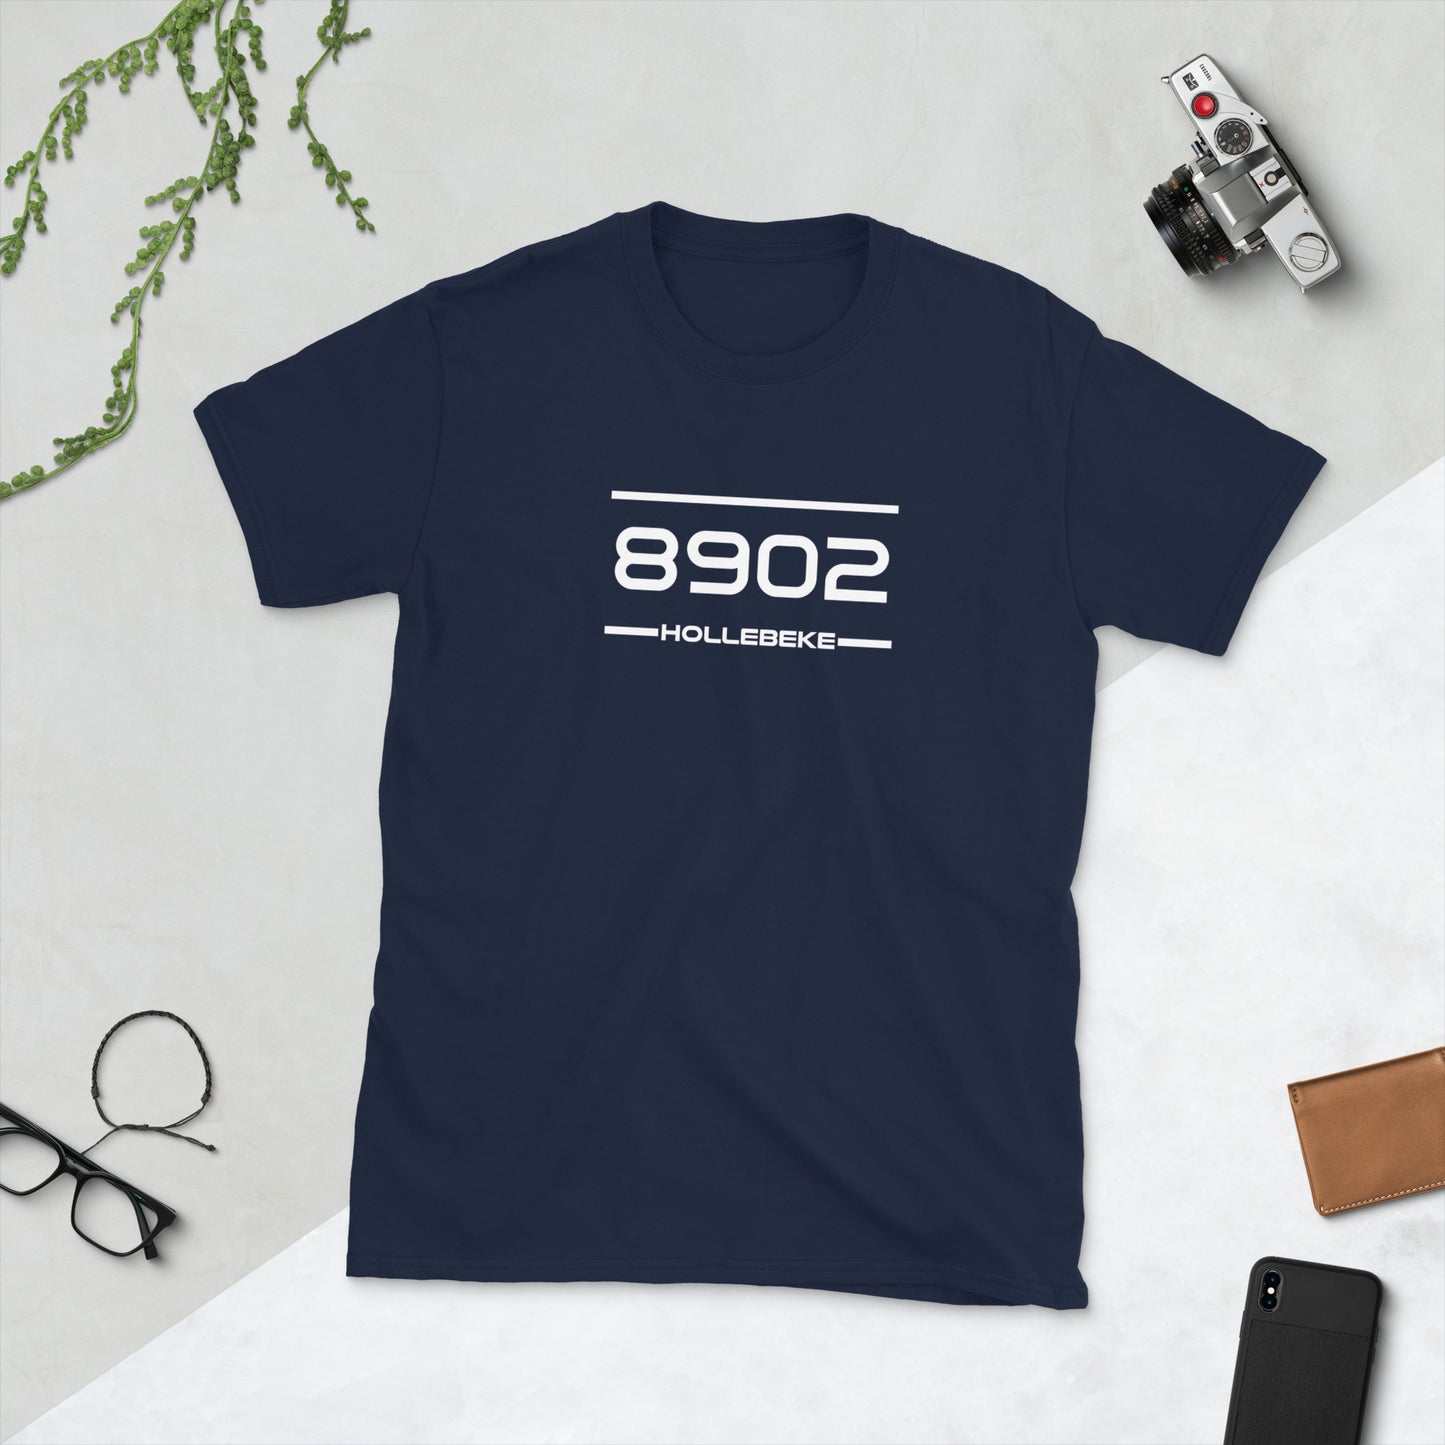 Tshirt - 8902 - Hollebeke